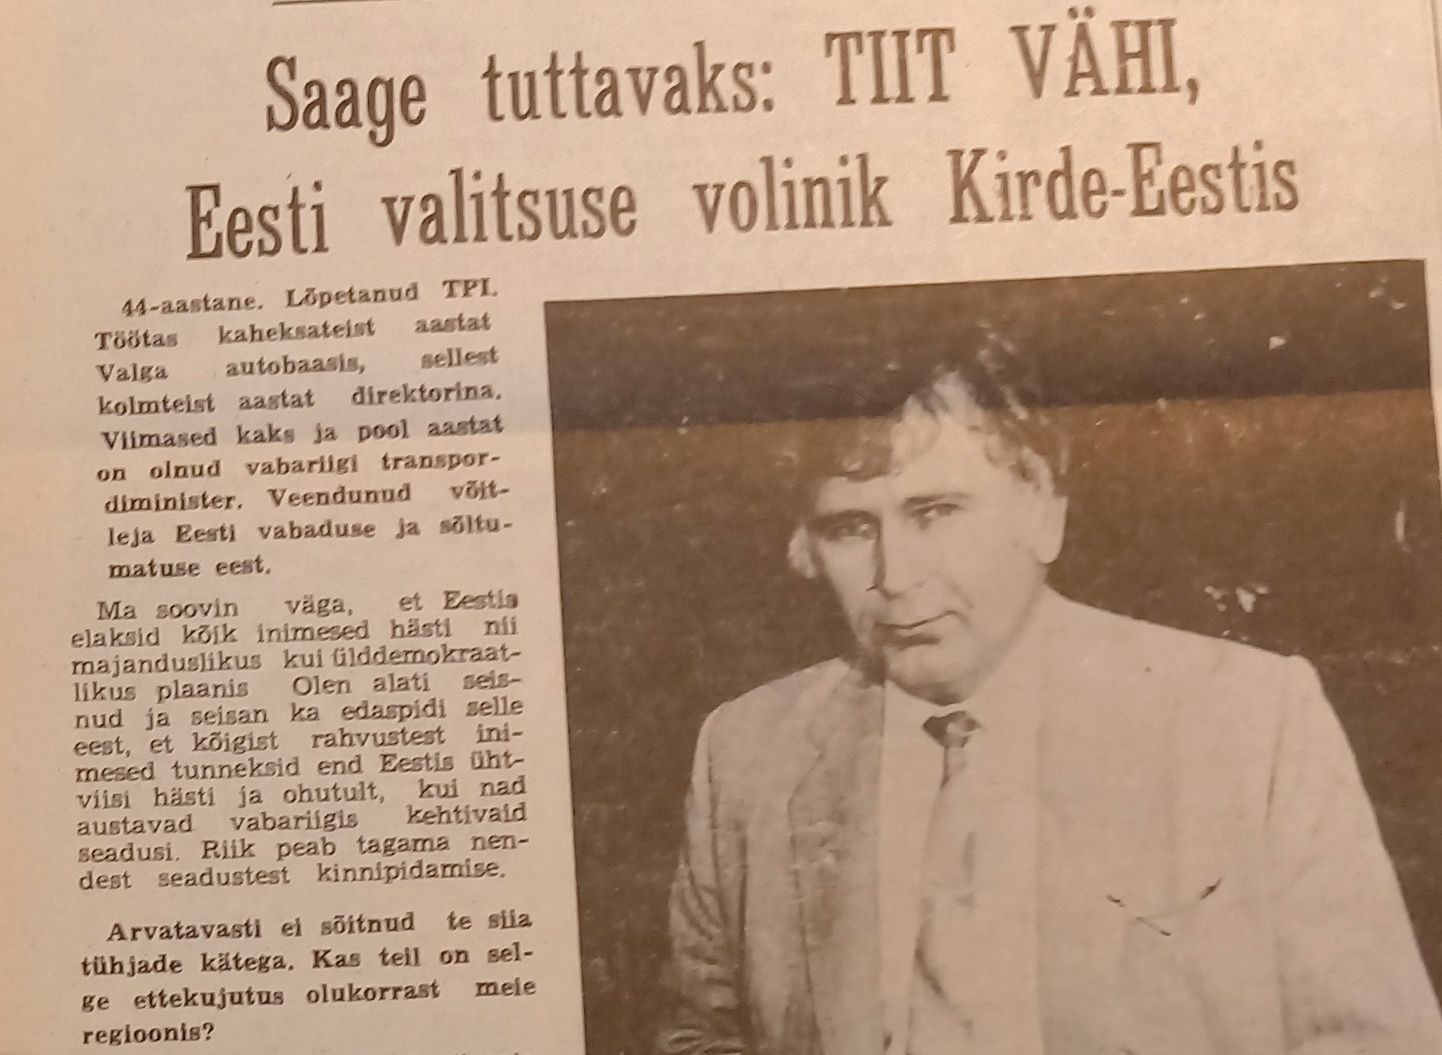 Esimeses Põhjarannikus ilmunud intervjuus 1991. aasta augustis ütles Tiit Vähi, et sellised kohalikud võimuorganid, kes ei täida Eesti seadusi, tuleb laiali saata.